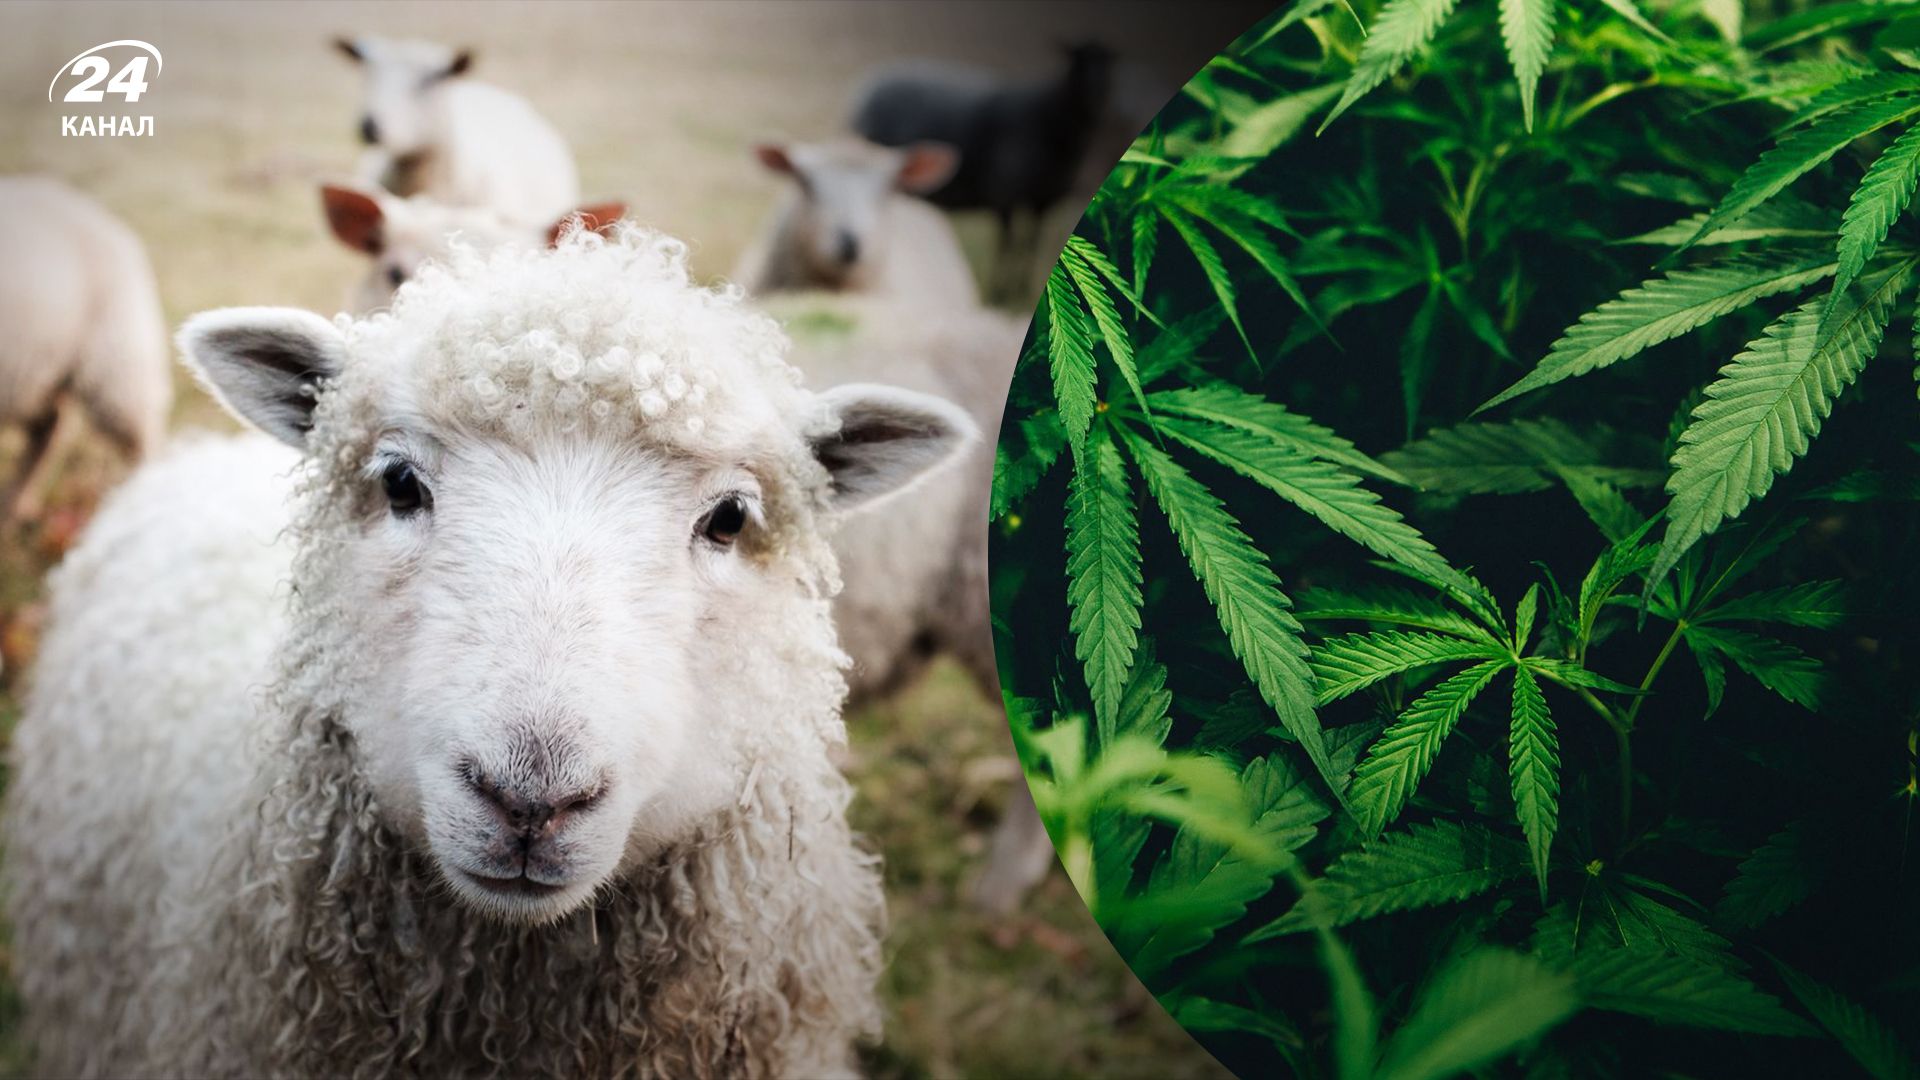 В Греции овцы съели 100 килограммов марихуаны - Развлечения 24